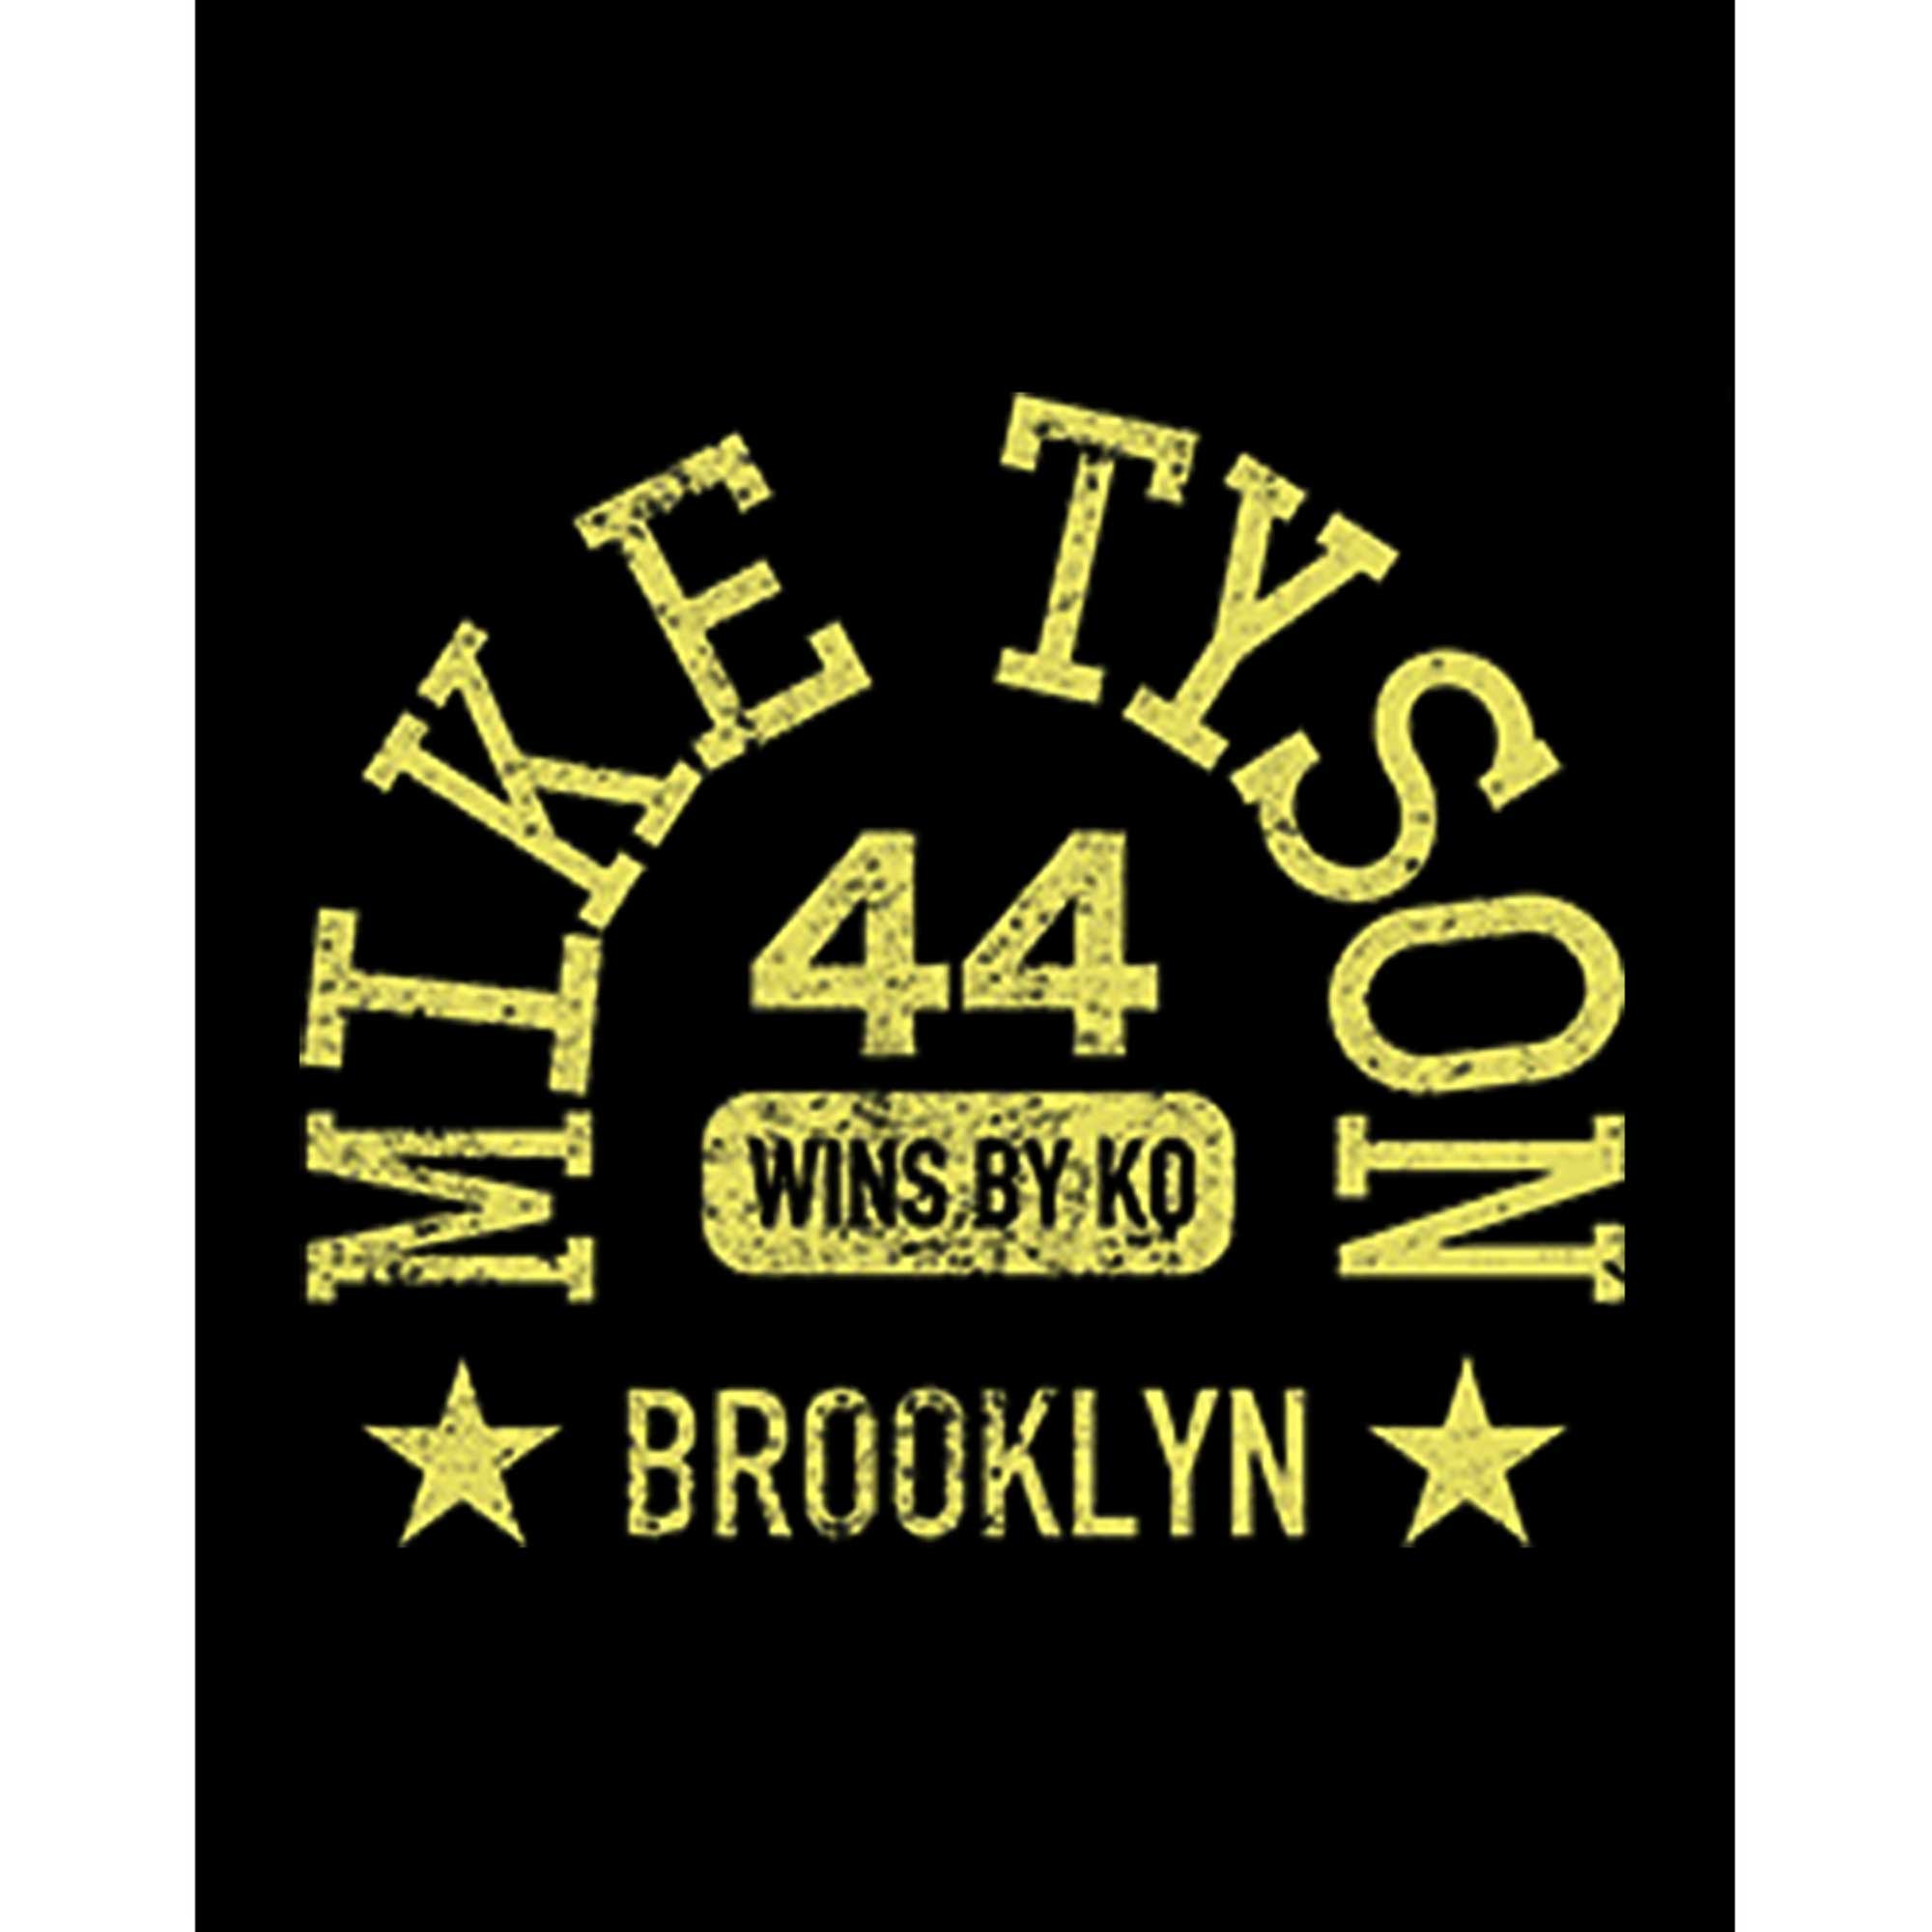 Mike Tyson 44 Wins by Knockout Büyük Sırt Patch Yama